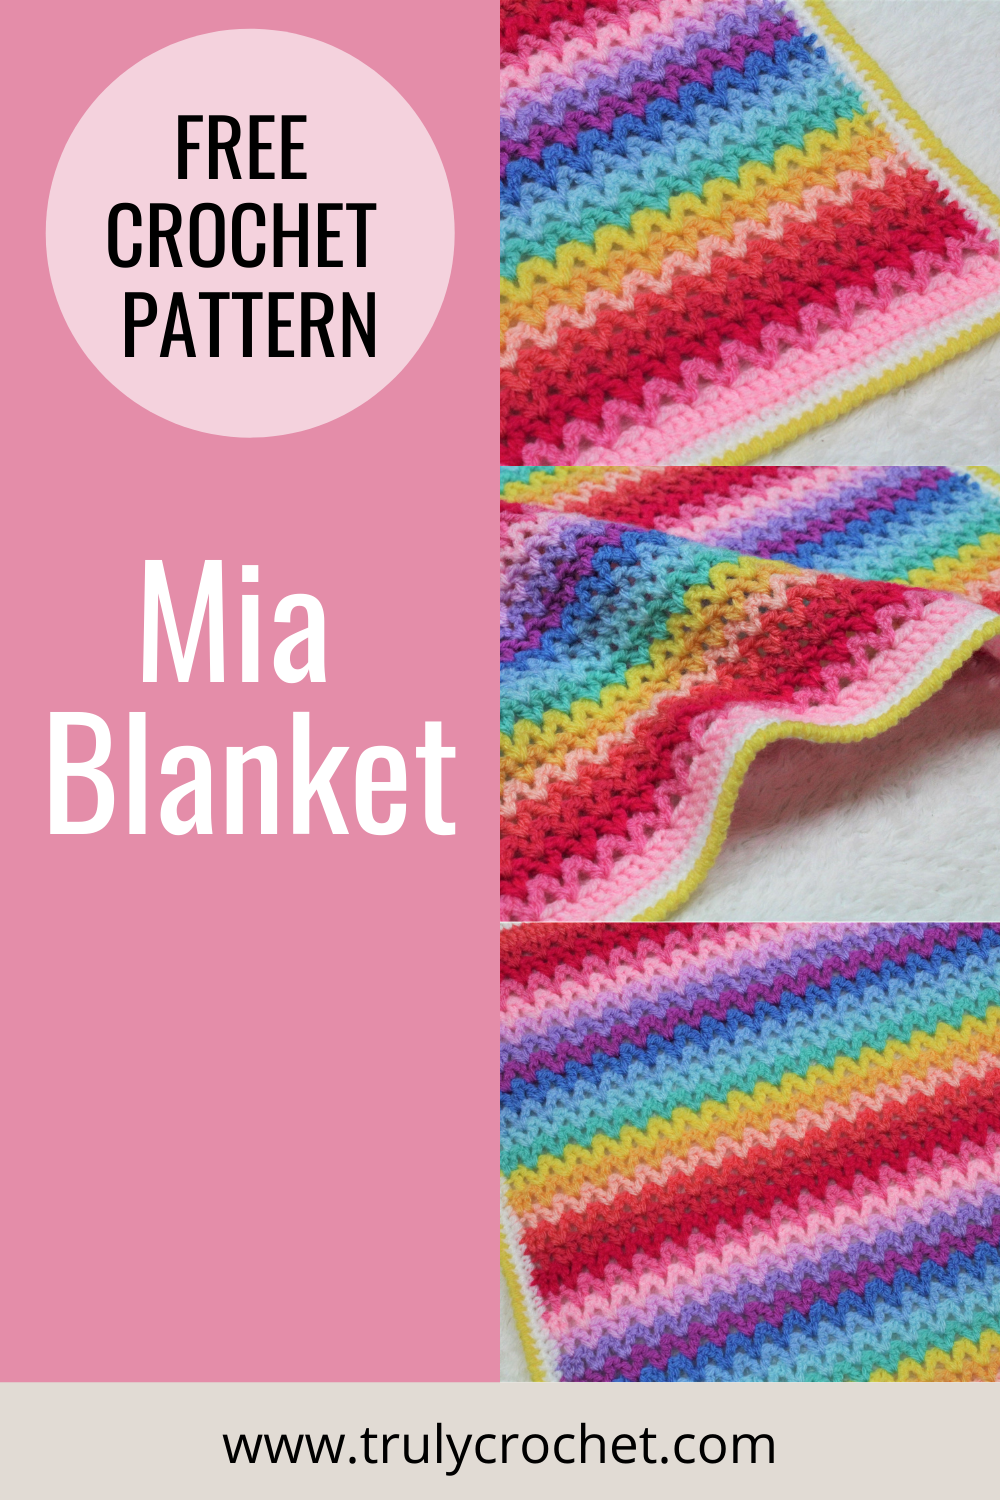 Mia Blanket - Pinterest Pin